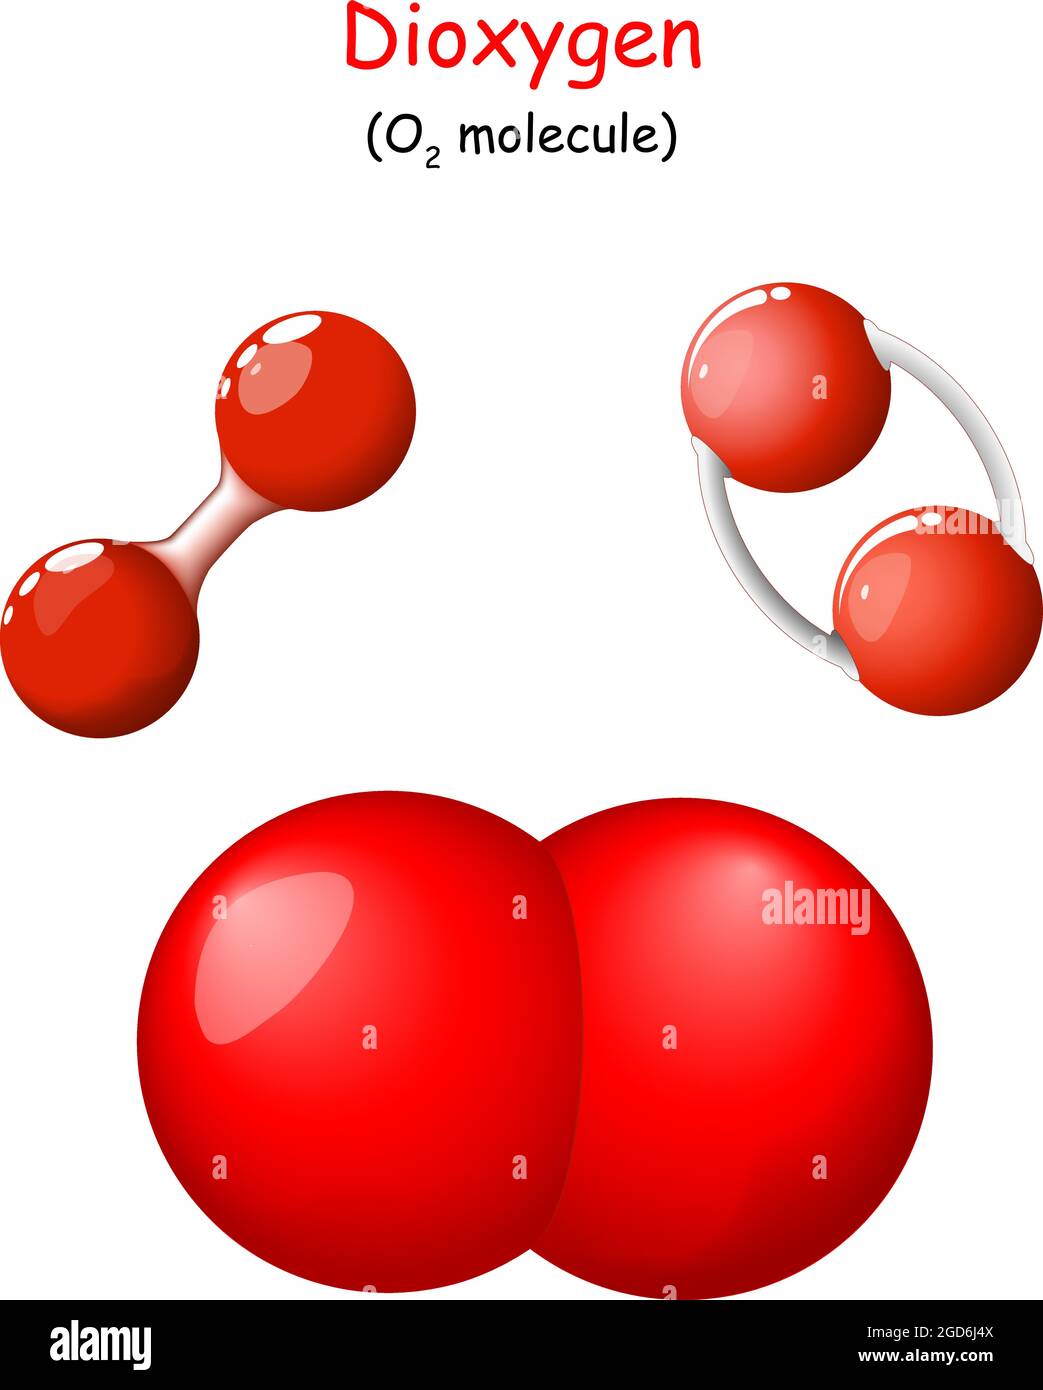 Sauerstoff. Strukturelle chemische Formel von Dioxygen. O2-Molekül-Modell.  Singulett-Sauerstoff oder Dioxidan. Chemie. Poster für Bildung. Symbole  festlegen. Vektor Stock-Vektorgrafik - Alamy